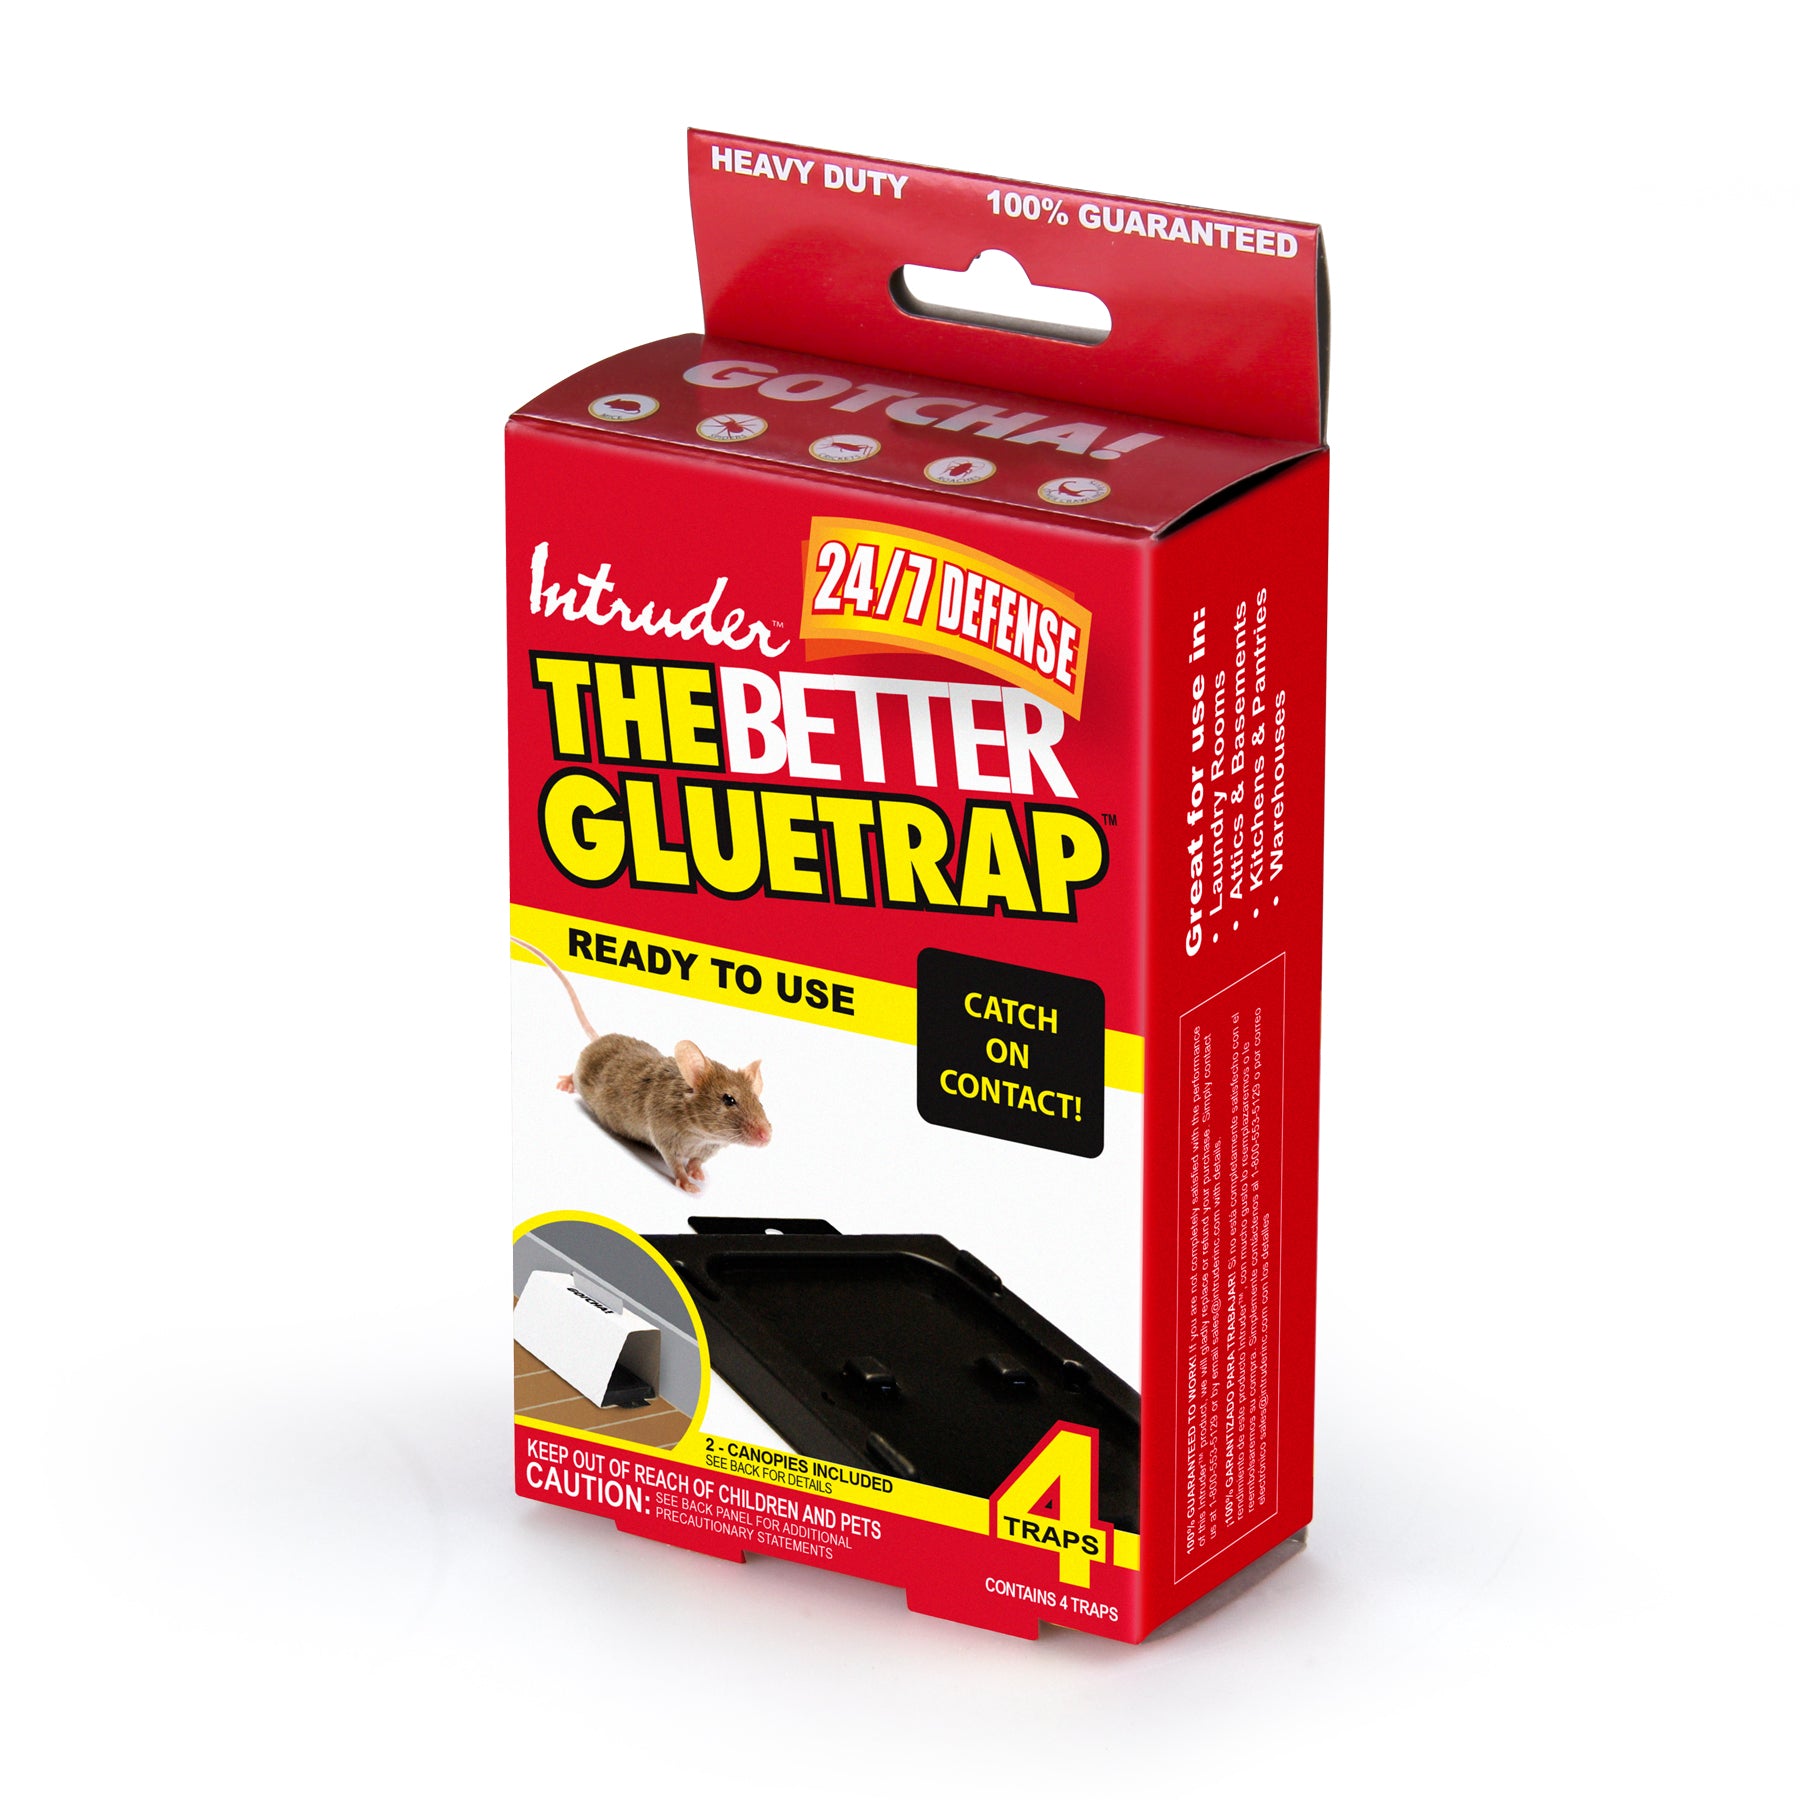 The Better Gluetrap™